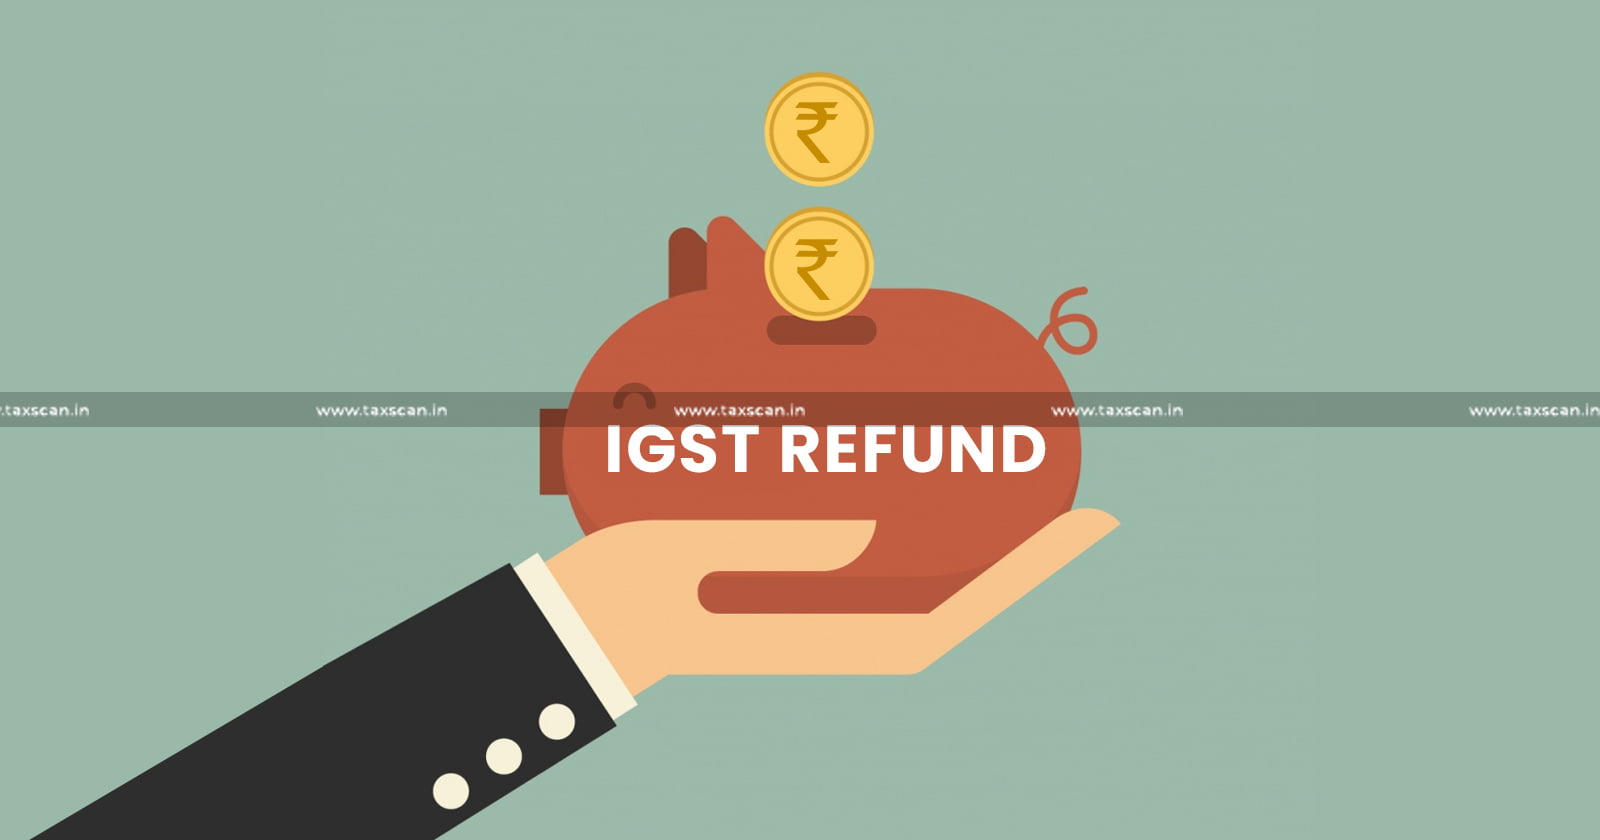 Refund - Refund of IGST - IGST - GST - Service - Overseas Entity - Intermediary - Department - Assessee - Delhi High Court - Refund Claim - Taxscan